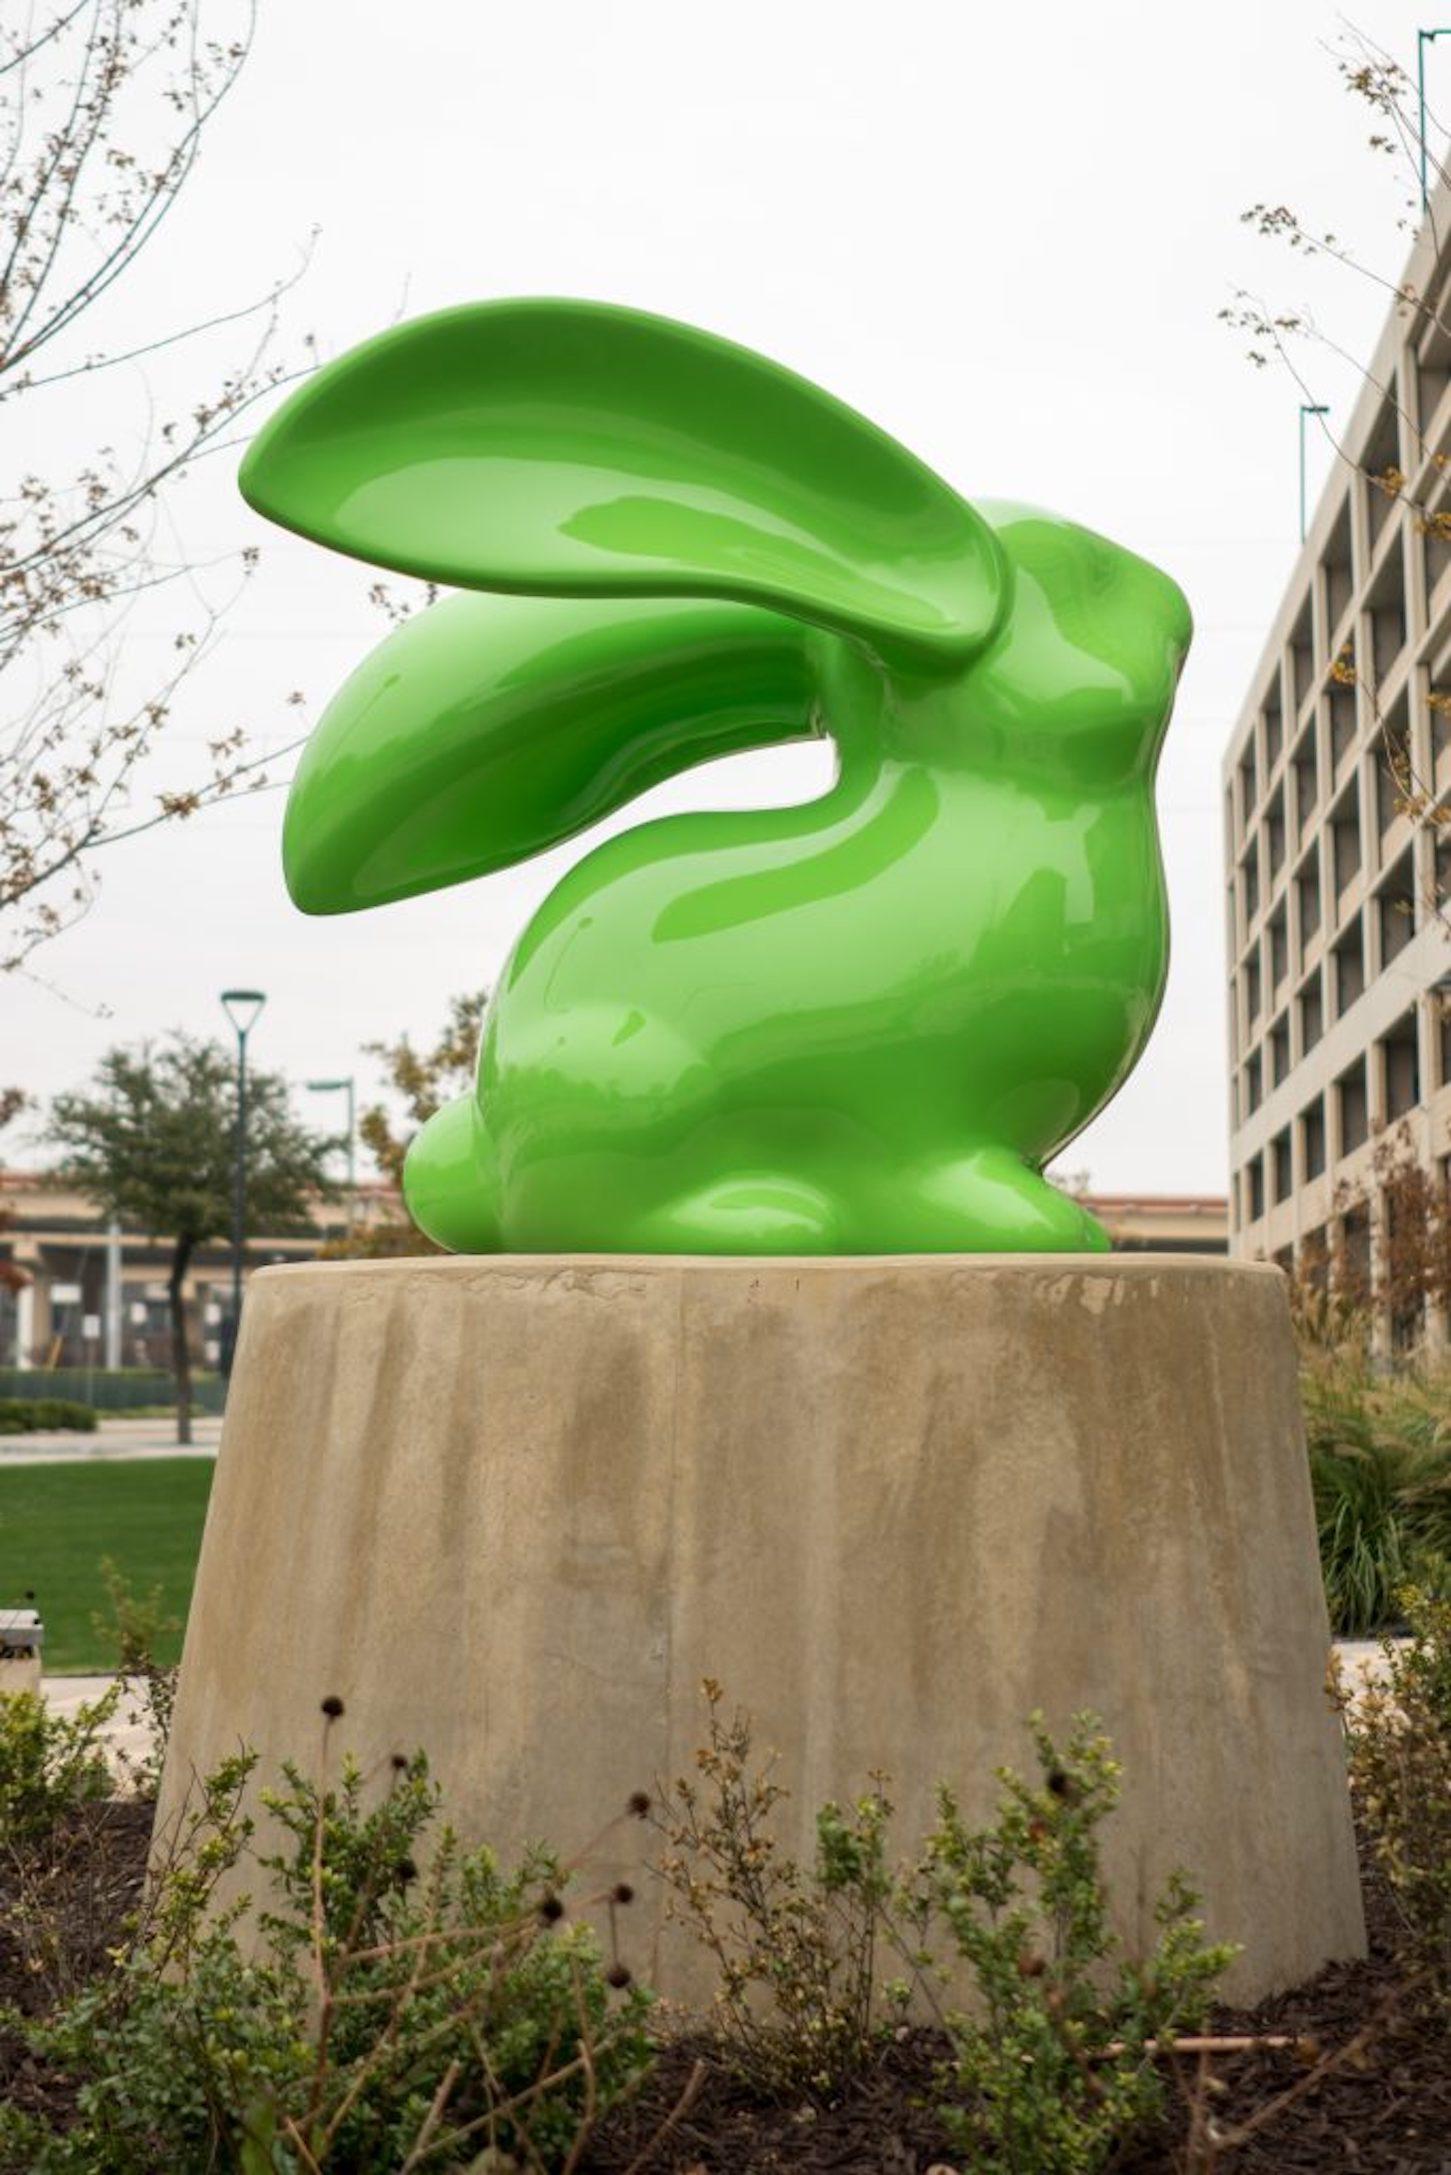 Sculpture d'extérieur, le lapin est créé en fibre de verre avec de l'émail et de la peinture automobile. Cette sculpture a été créée pour être placée à l'extérieur, dans n'importe quel environnement.
la base 